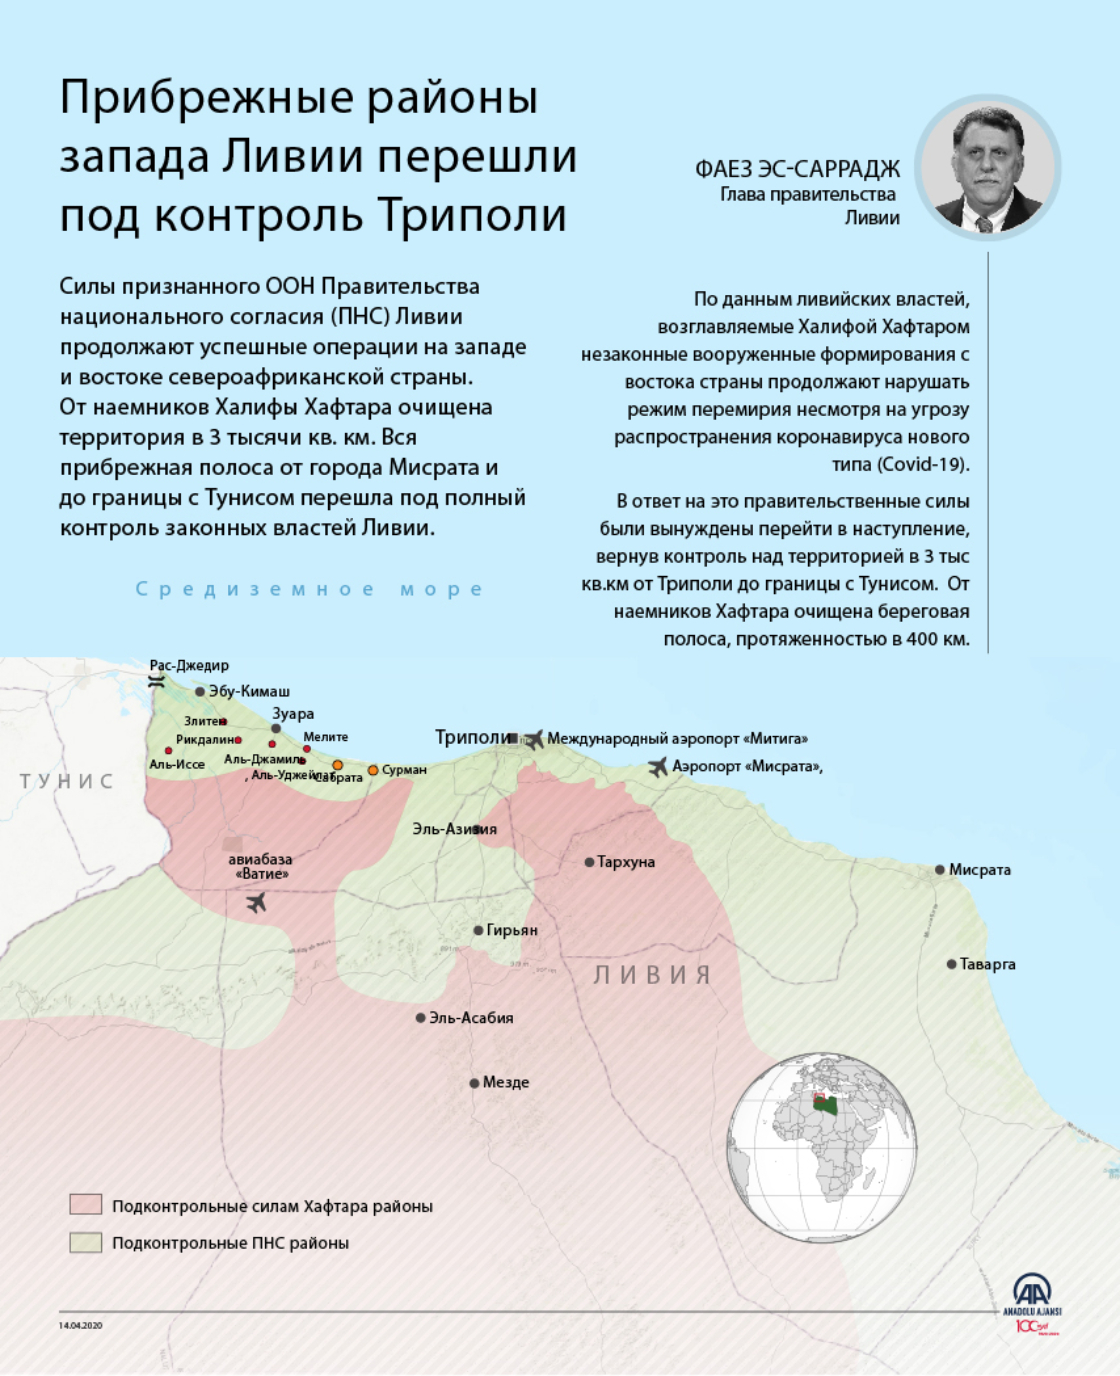 Прибрежные районы запада Ливии перешли под контроль Триполи